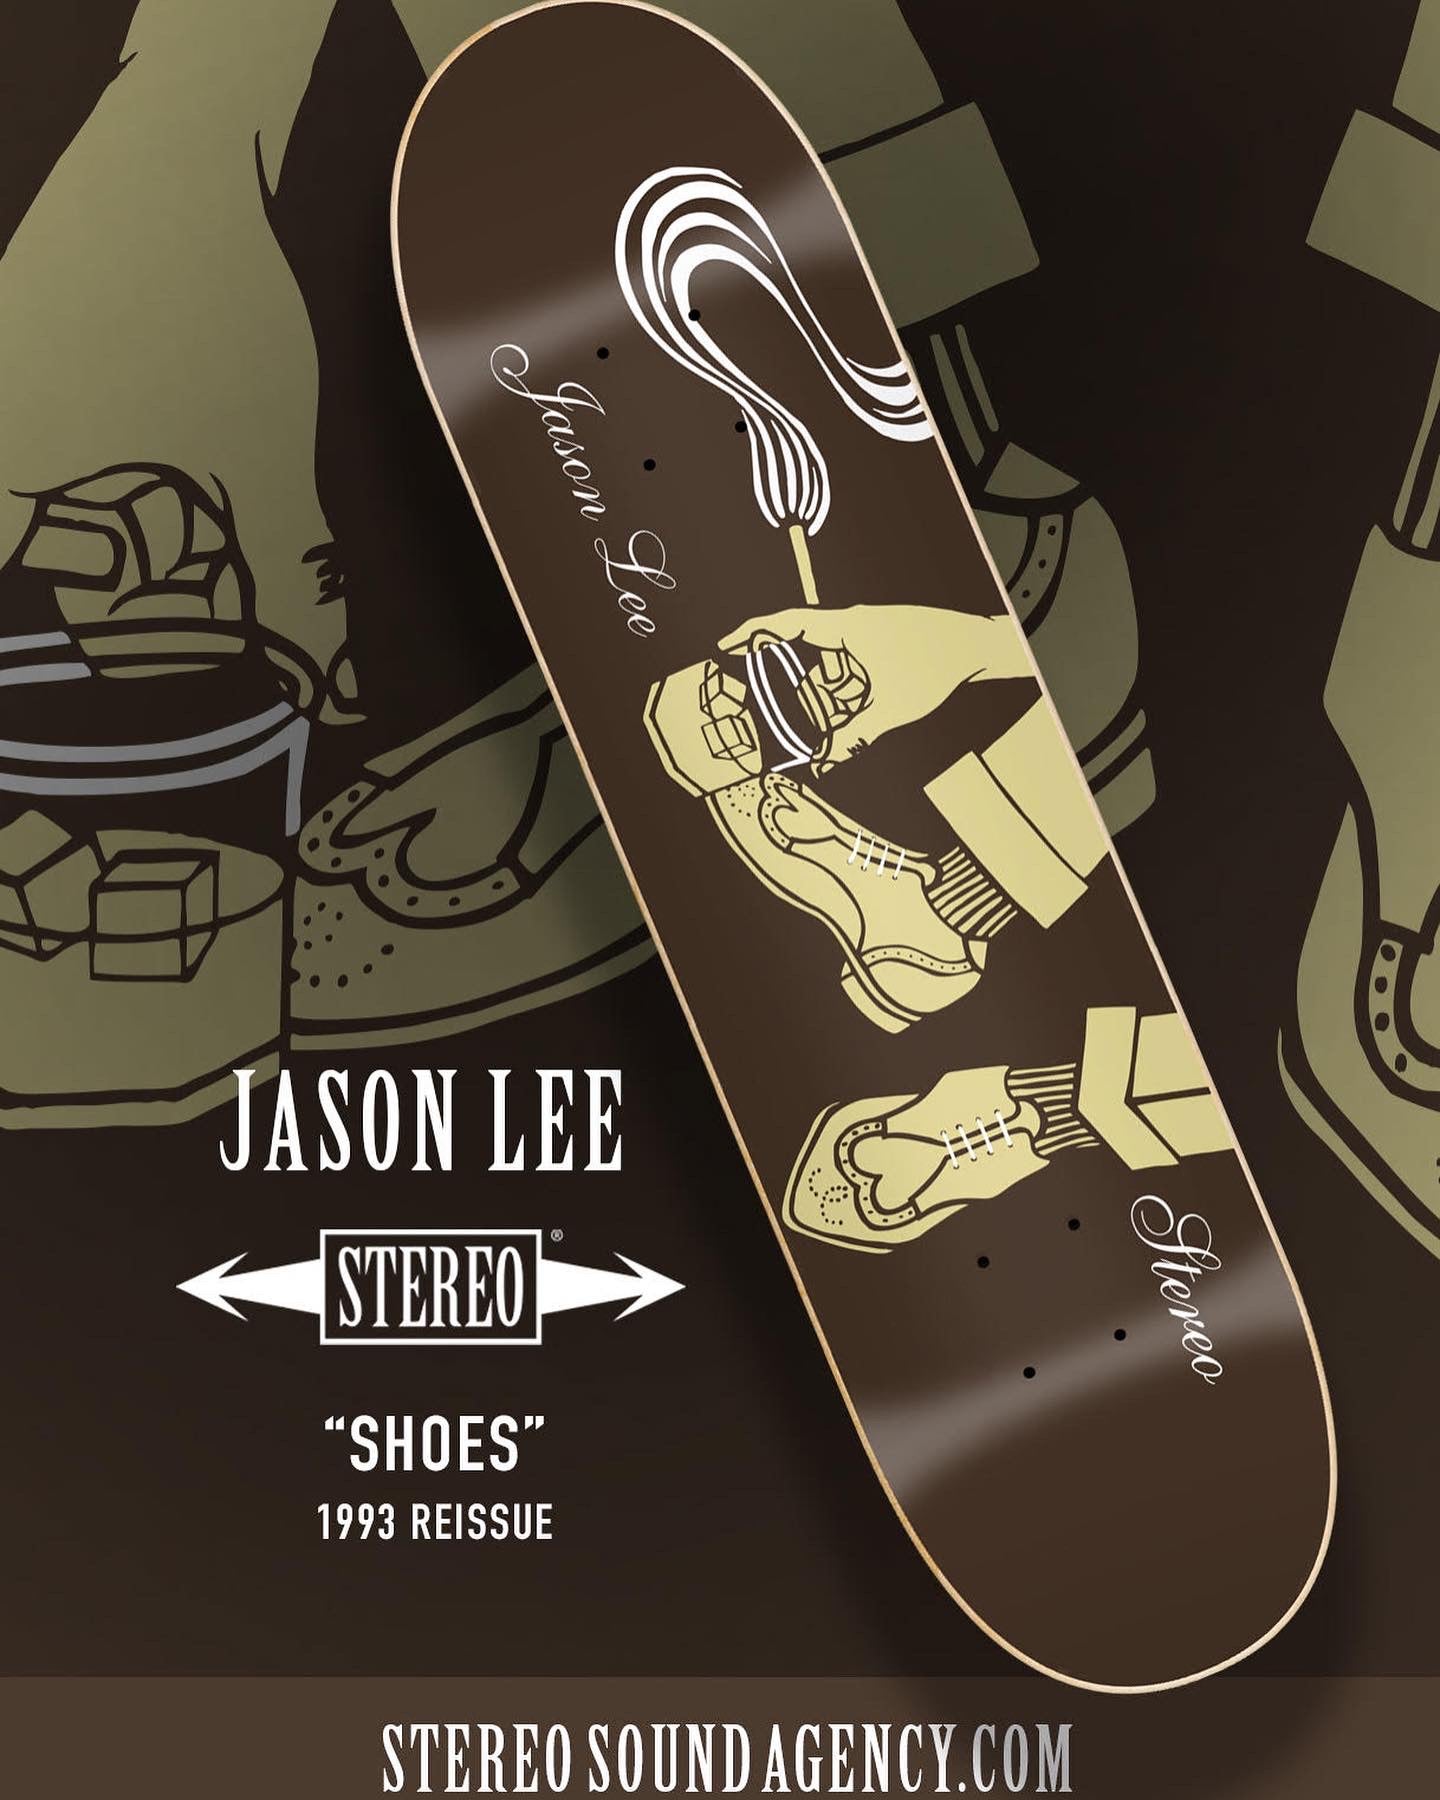 Jason Lee "Shoes" Reissue 8.25", 1993.